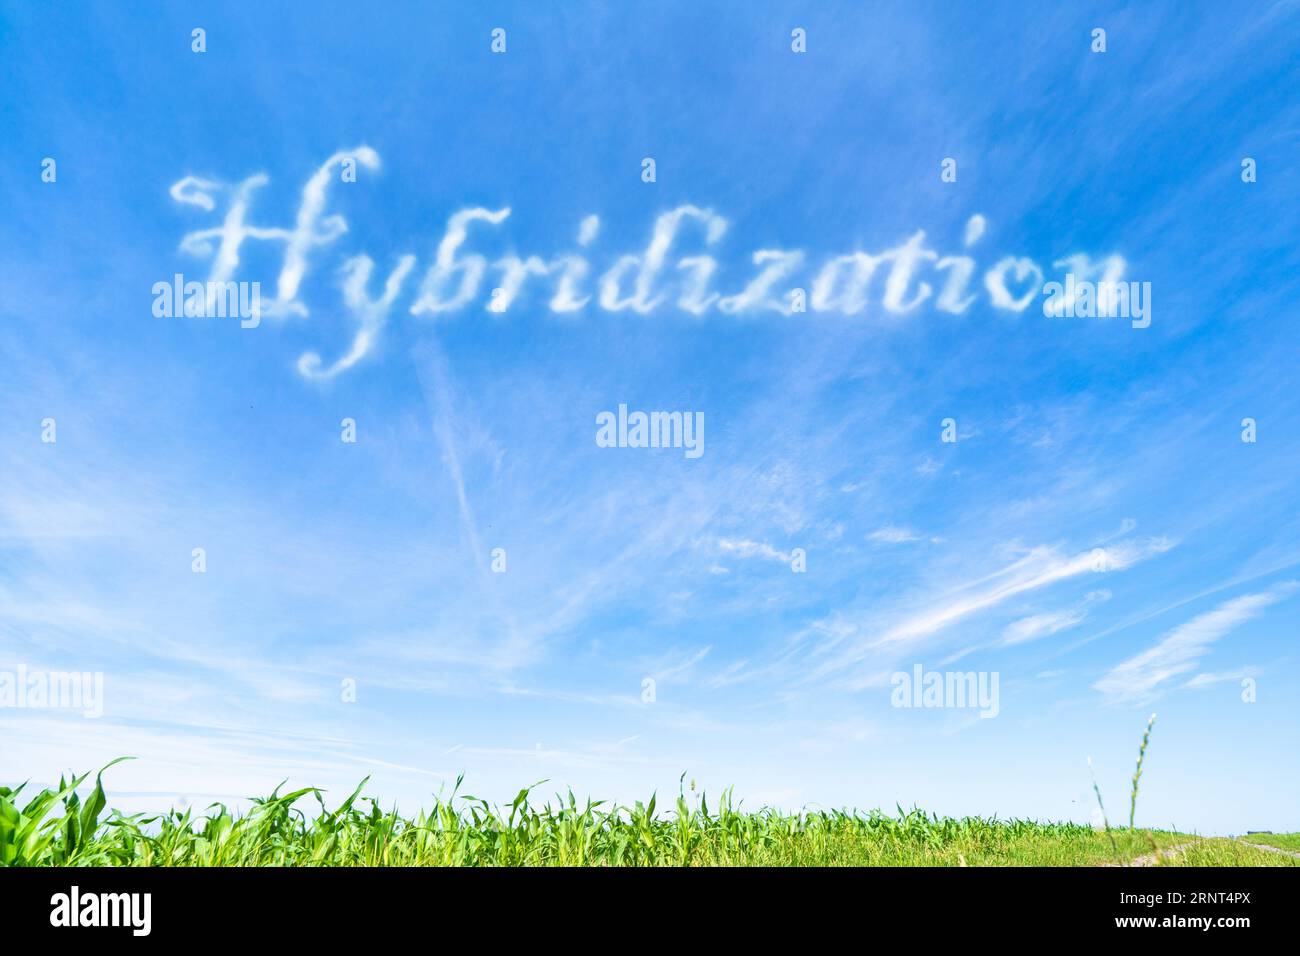 Hybridisierung: Züchtung verschiedener Arten oder Sorten, um Hybriden mit gewünschten Merkmalen zu schaffen. Stockfoto